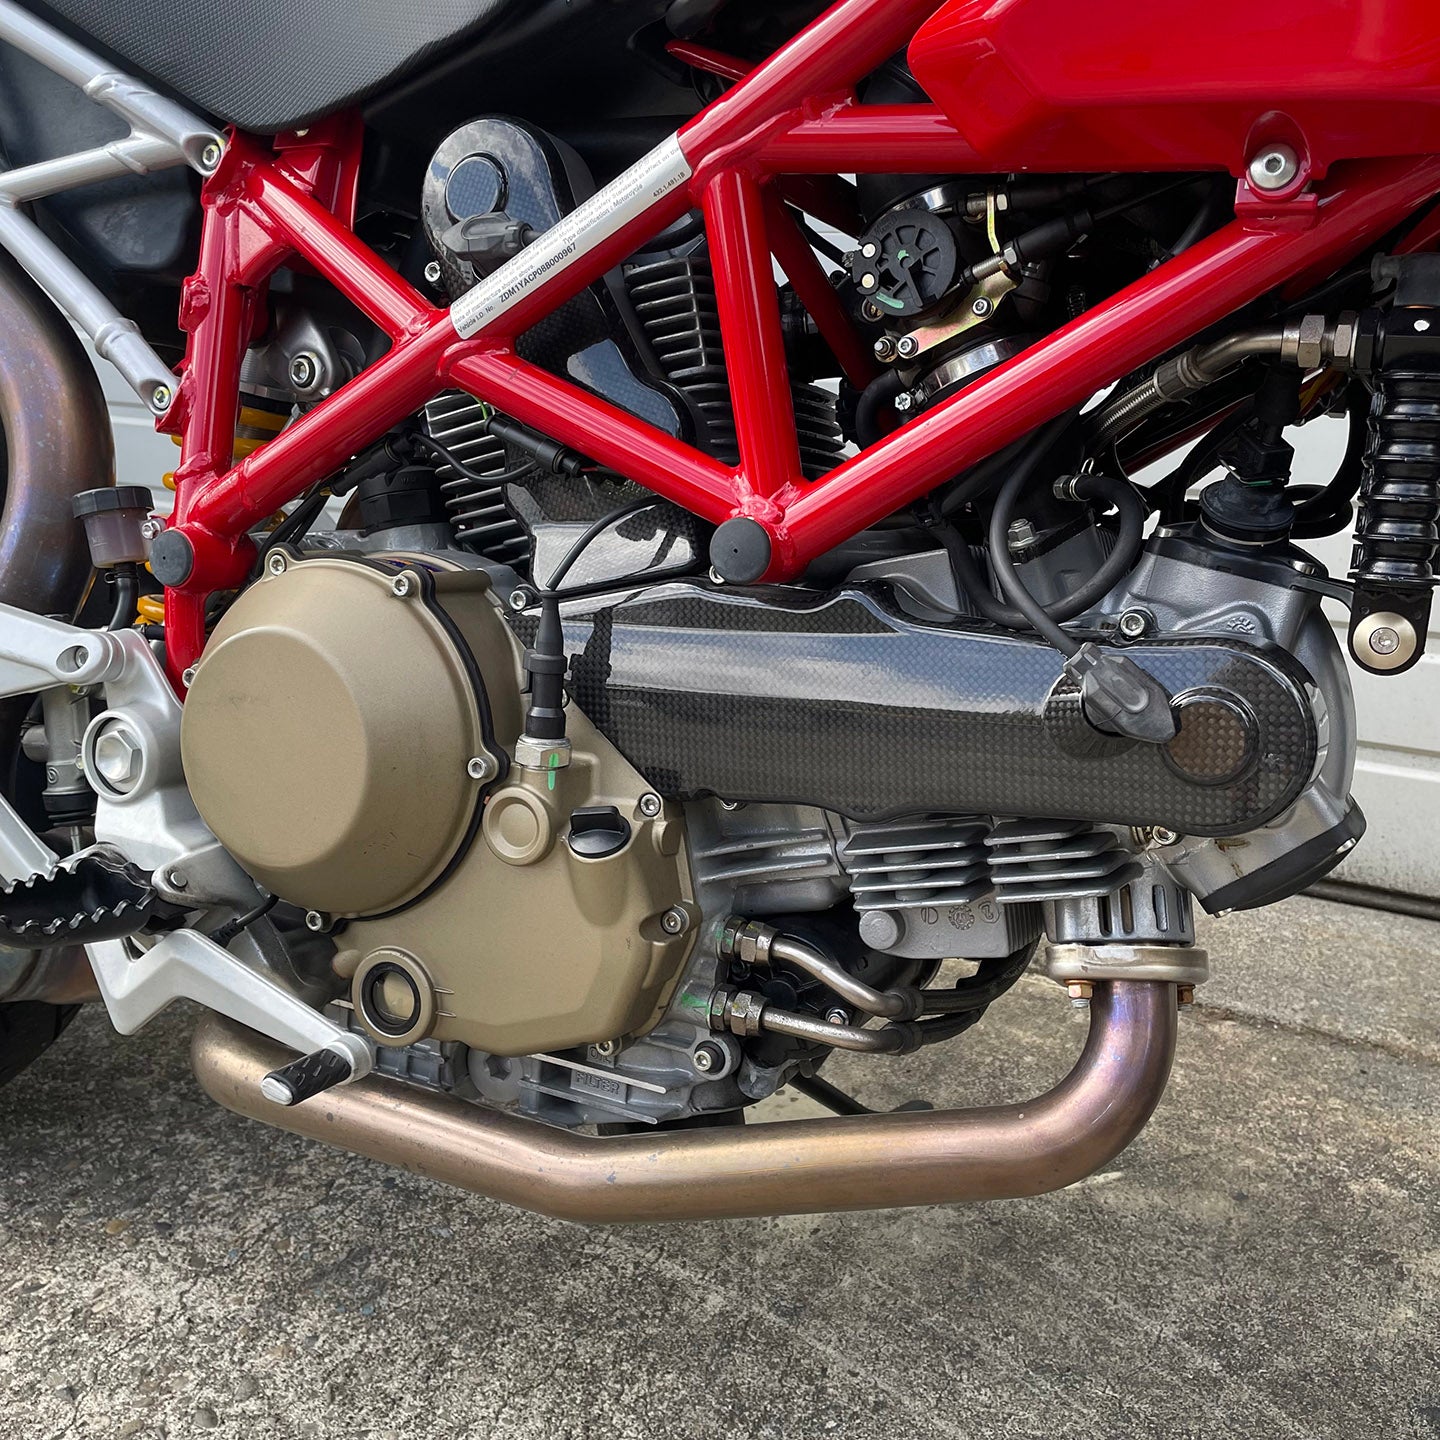 2008 Ducati Hypermotard 1100S (531 Miles)